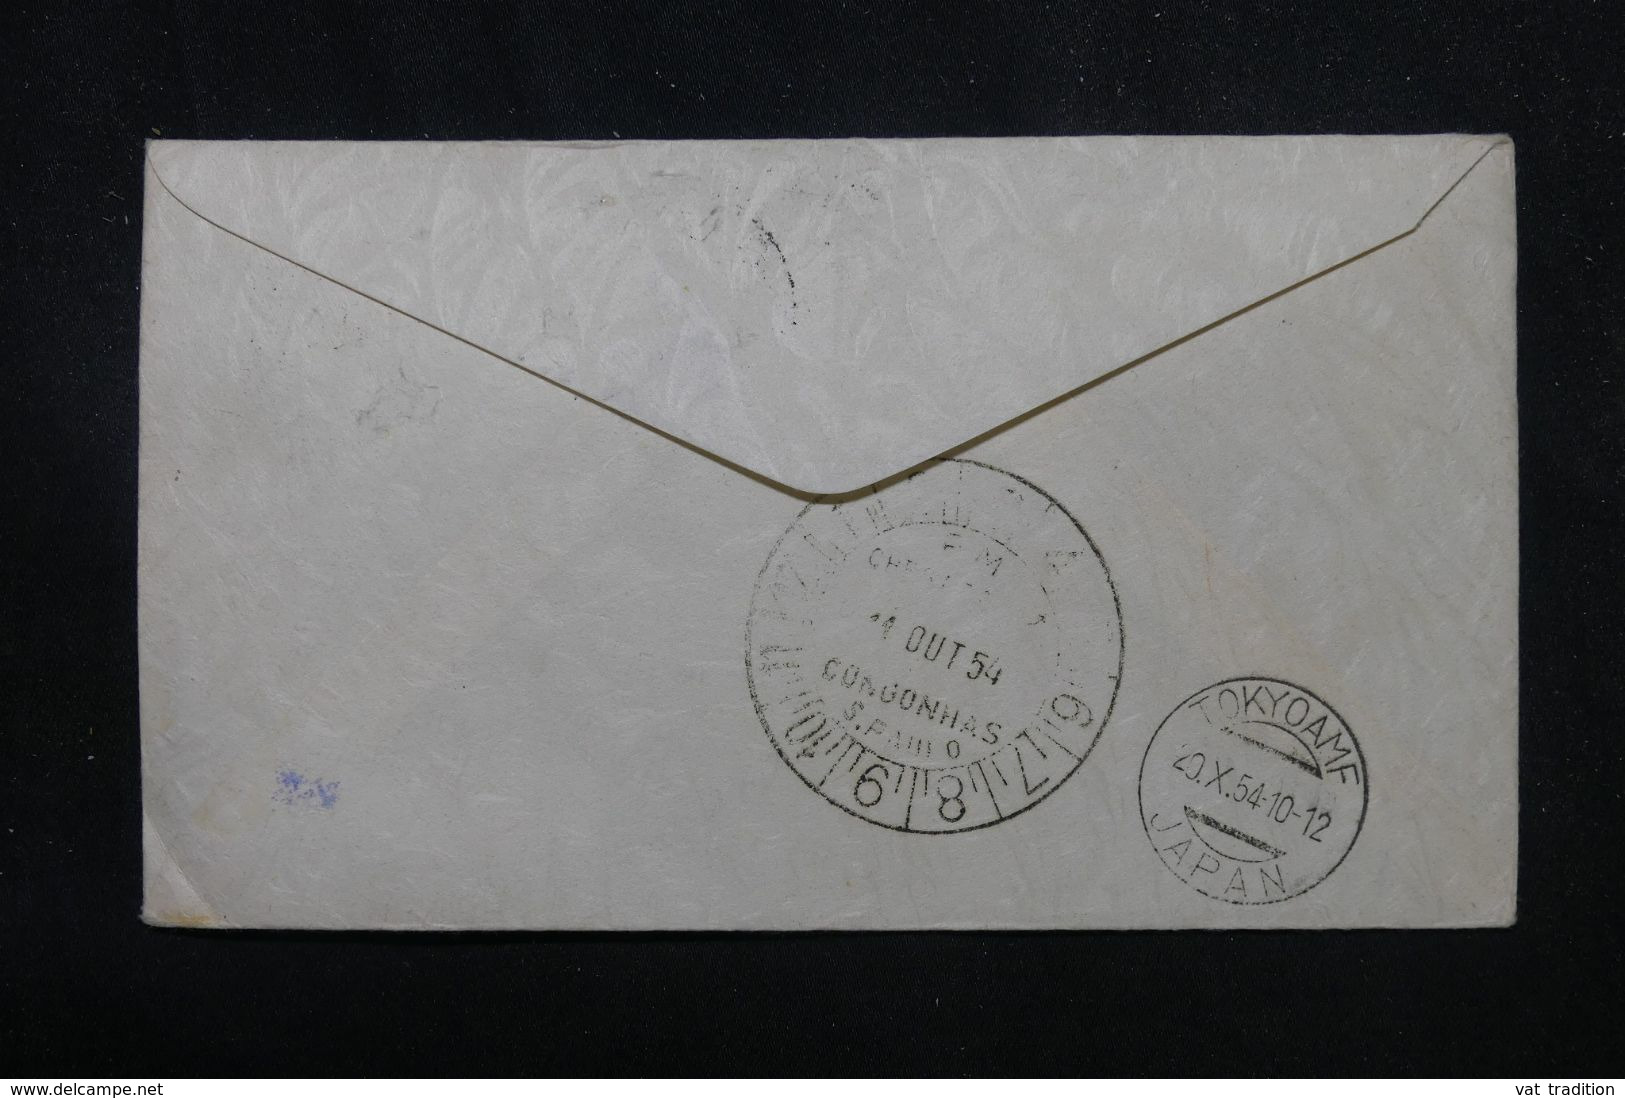 BRÉSIL - Enveloppe Commémorative Du 1er Vol  Sao Paulo / Tokyo En 1954  - L 70427 - Briefe U. Dokumente